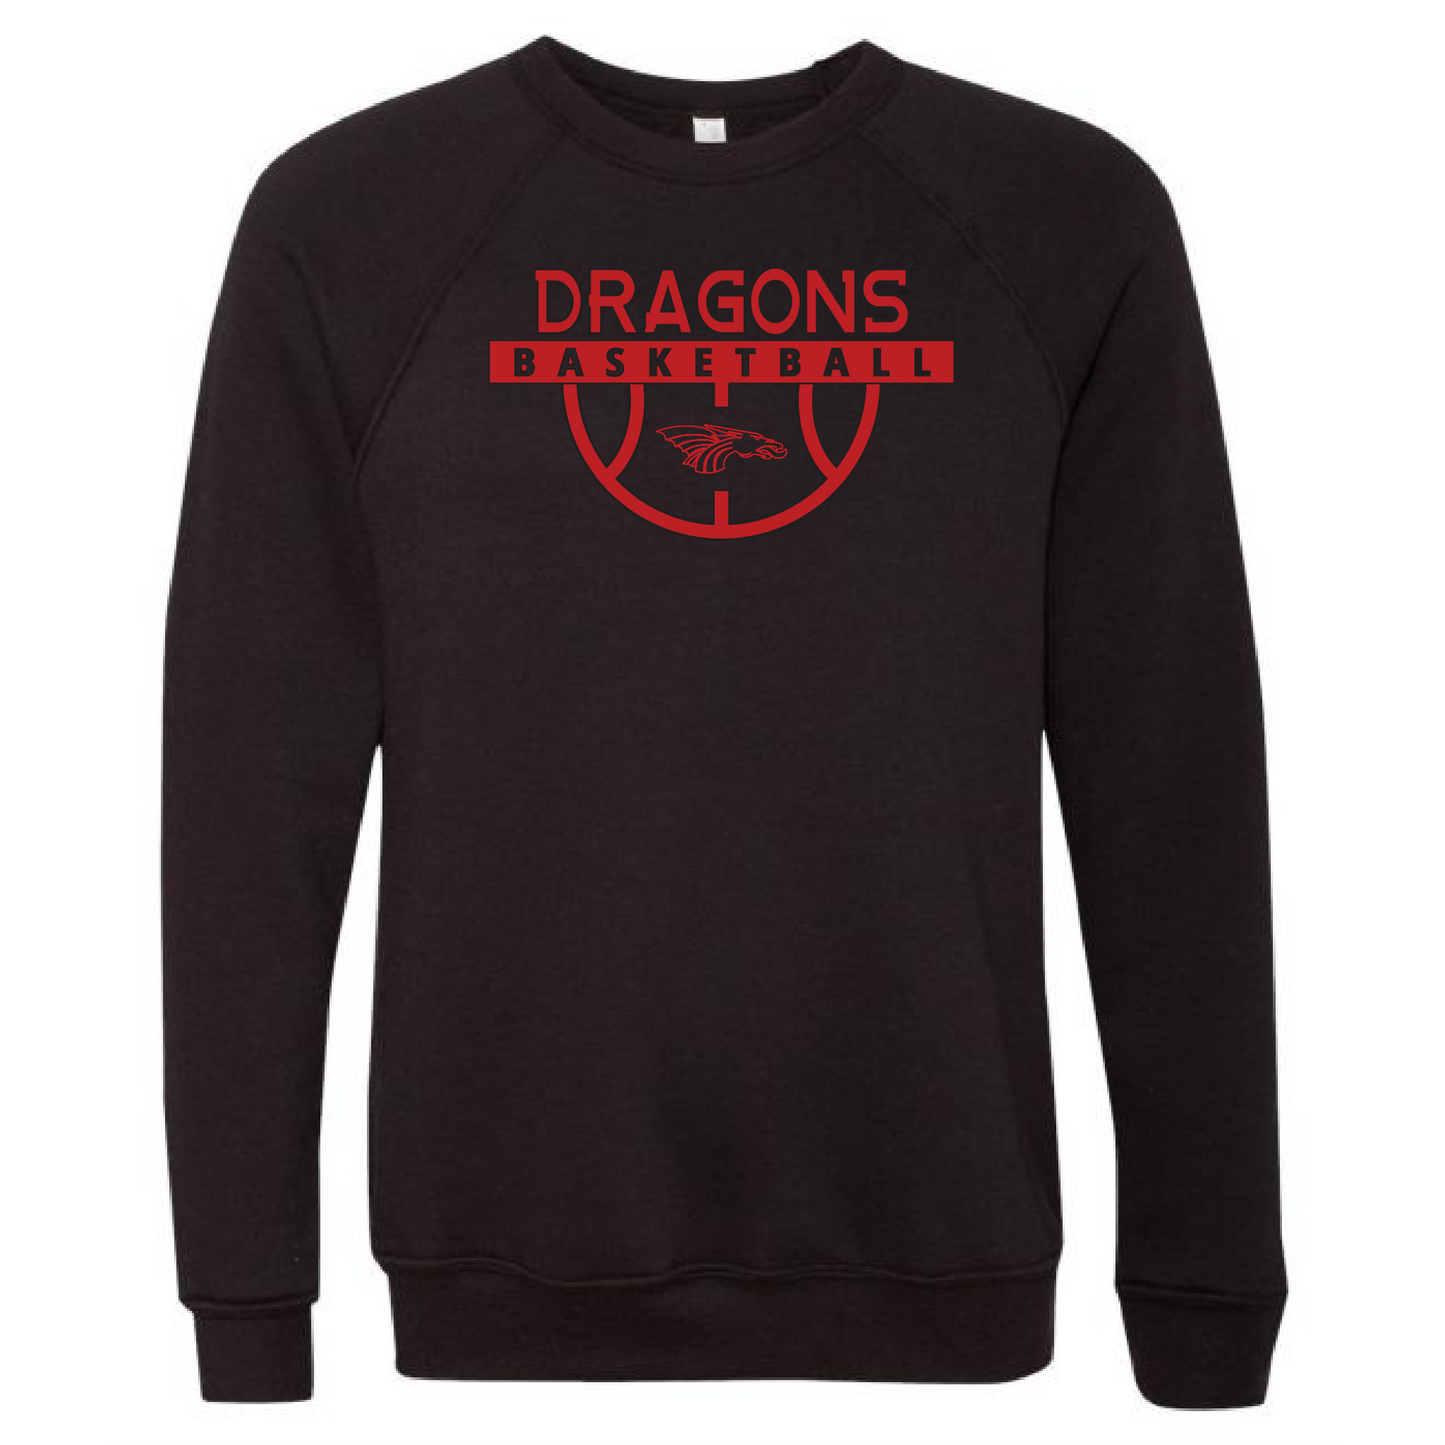 Unisex Sweatshirt - Dragons Basketball